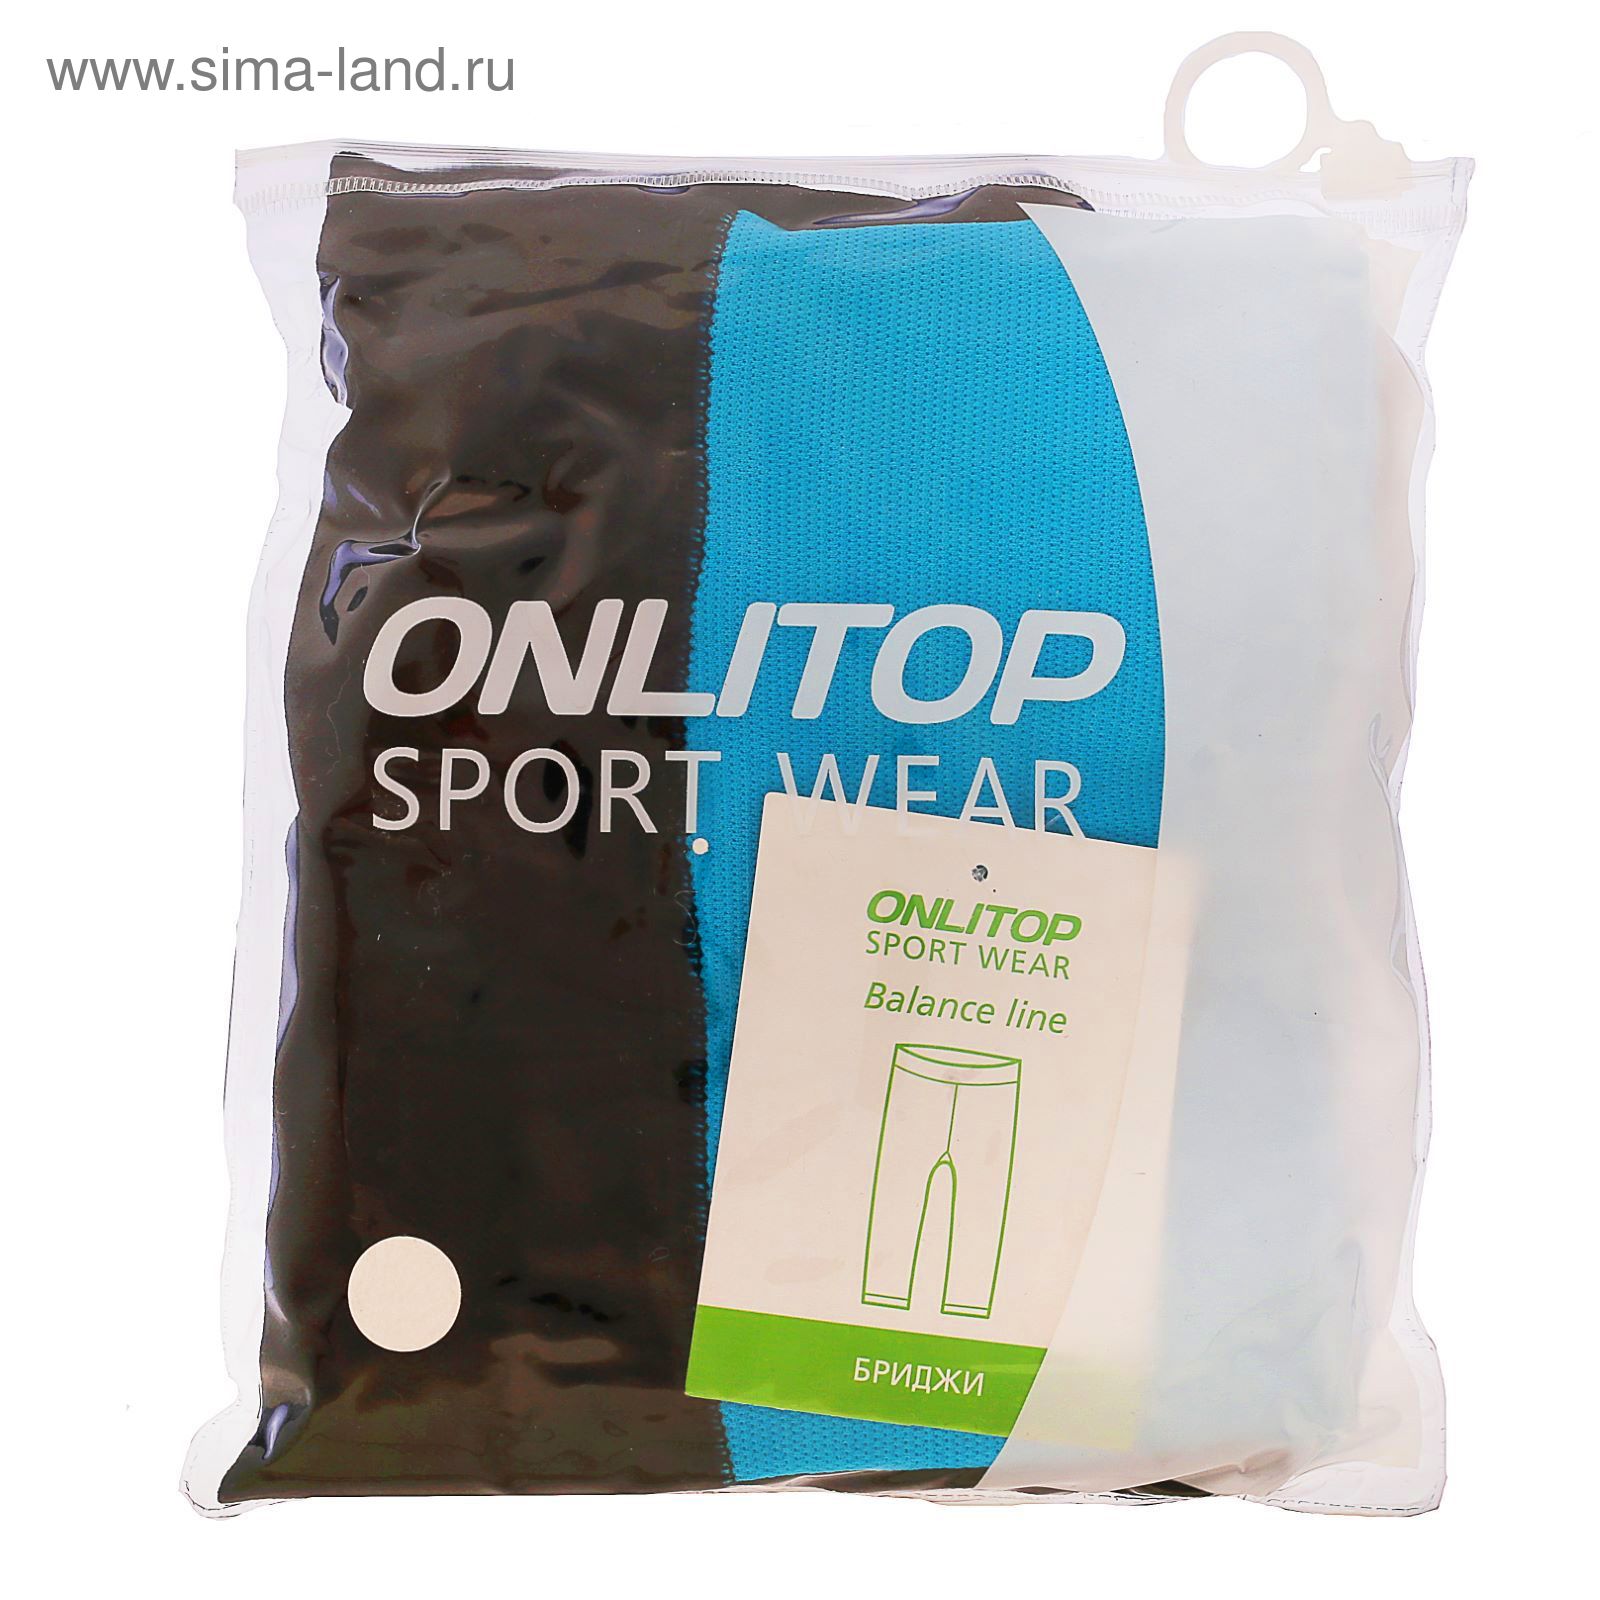 Спортивные бриджи ONLITOP Balance blue, размер S-M (42-44)